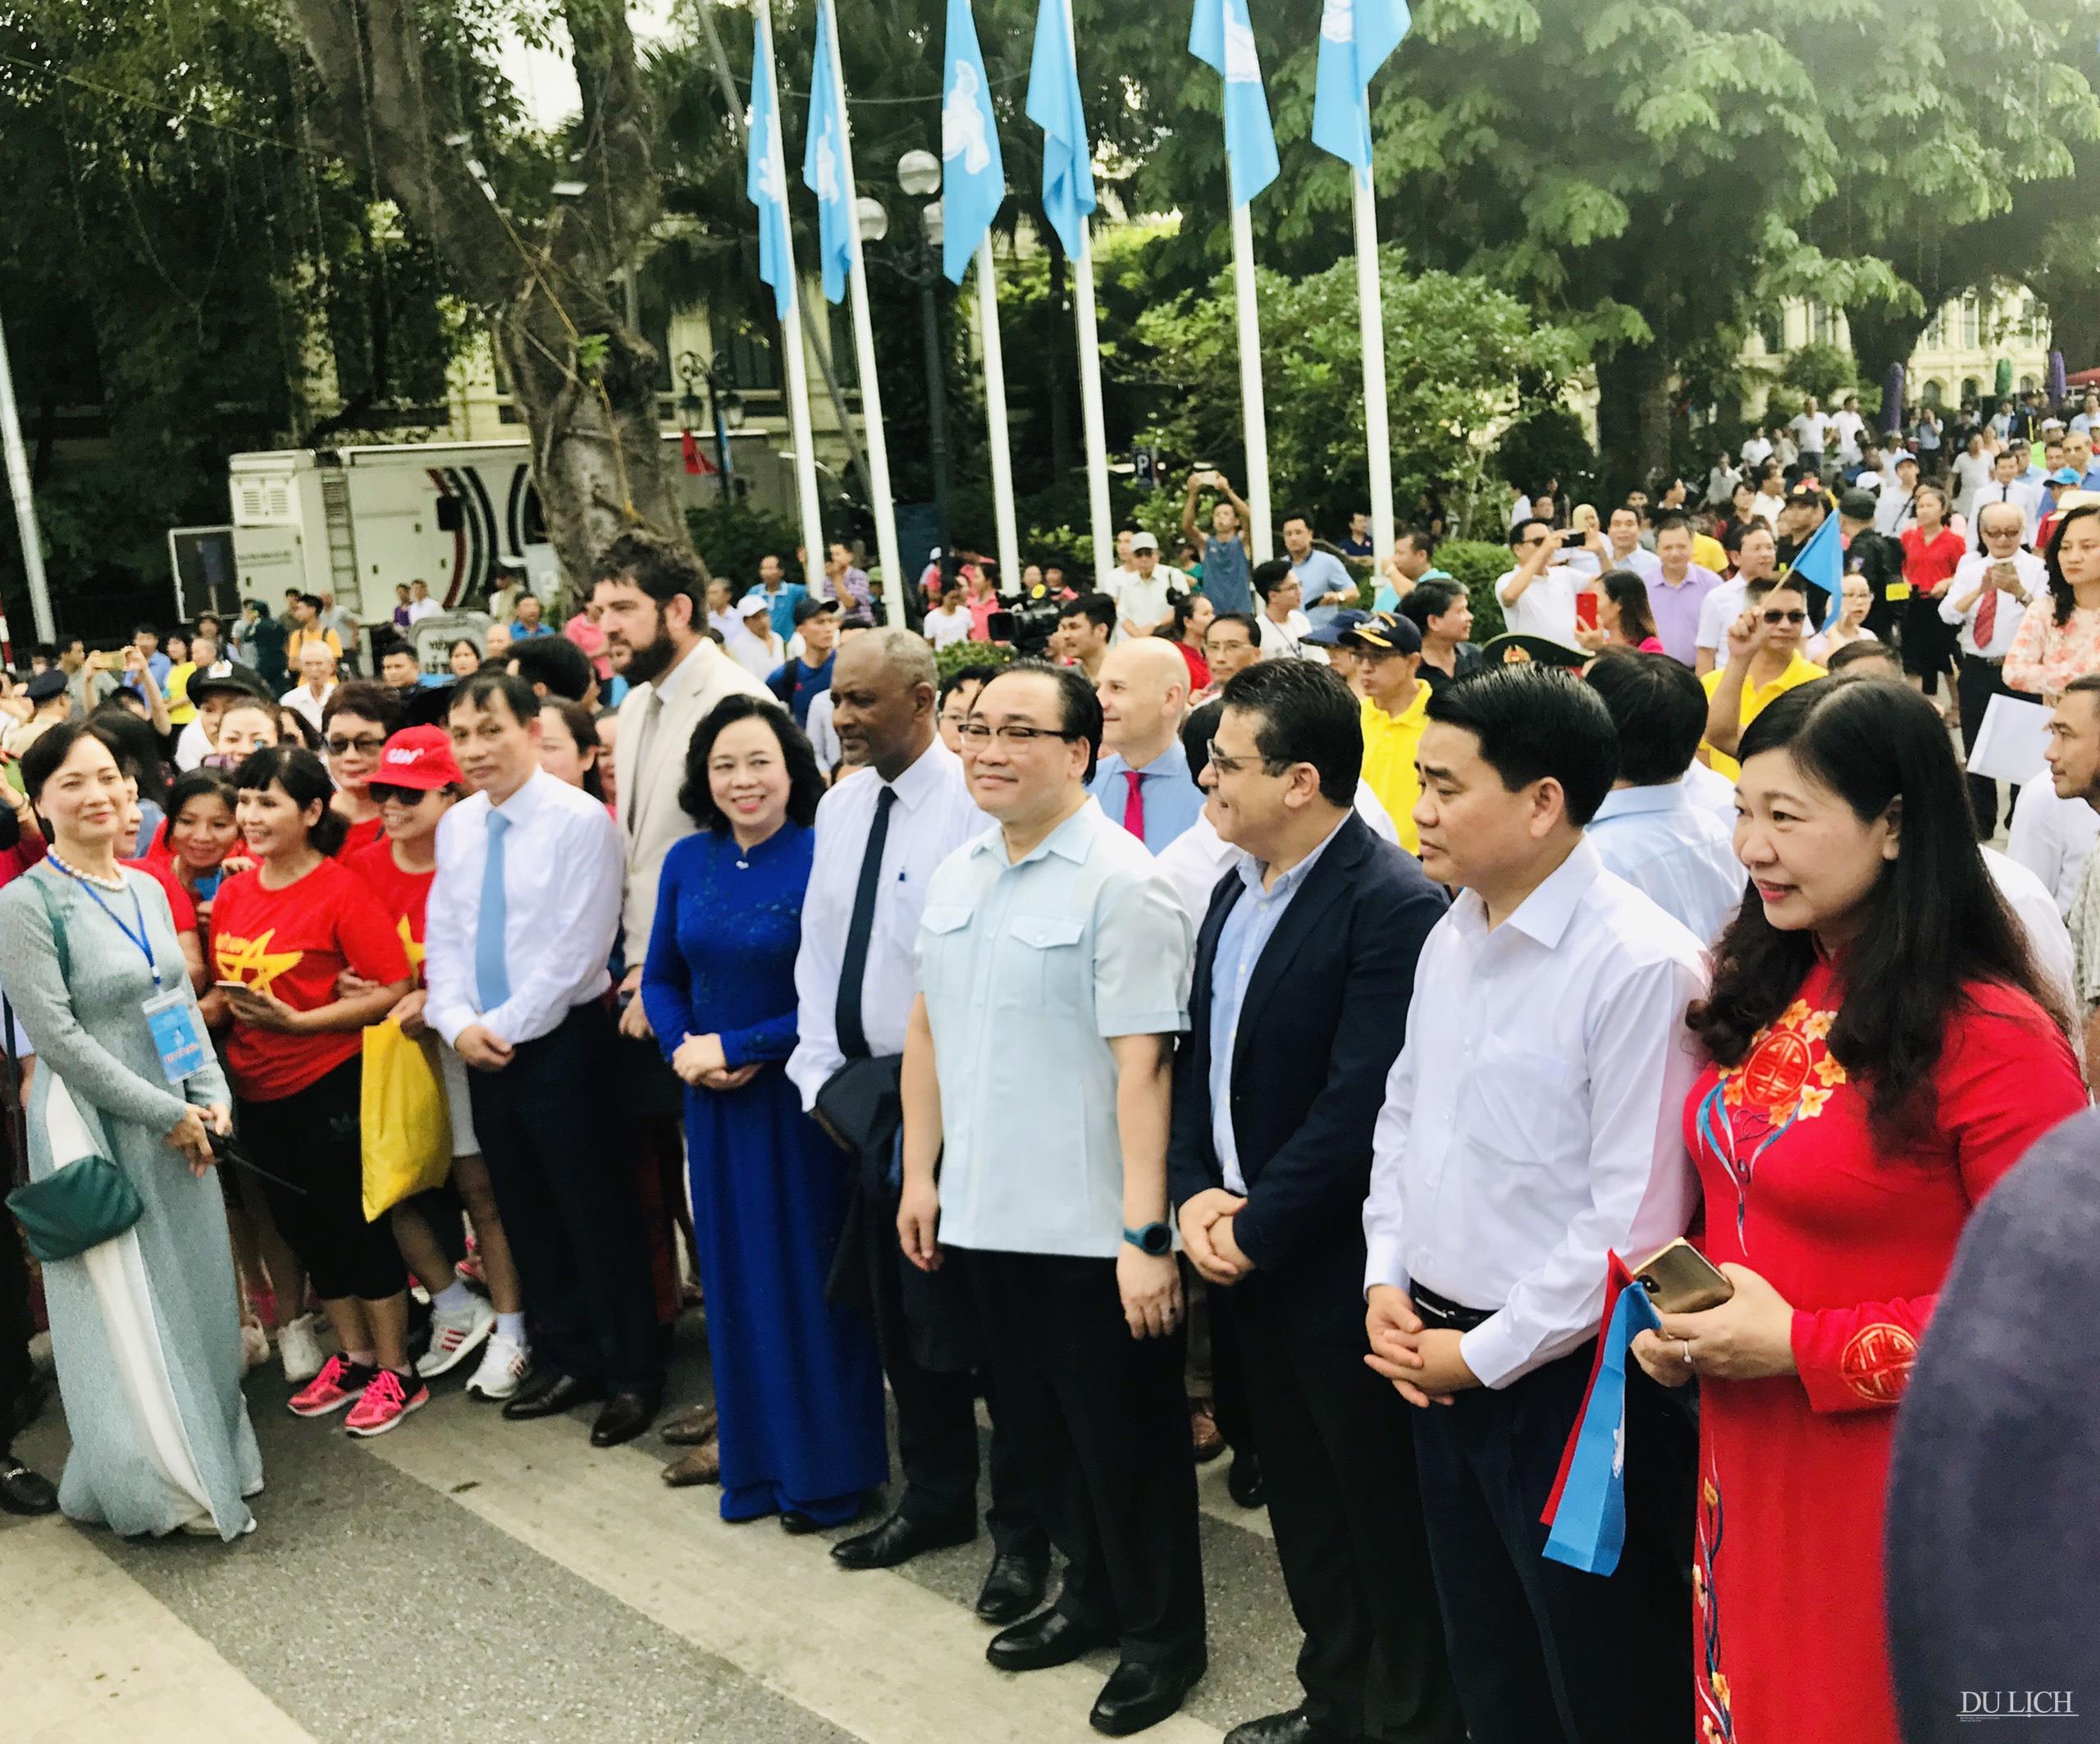 Ủy viên Bộ Chính trị, Bí thư Thành ủy Hoàng Trung Hải cùng các đại biểu tham gia đi bộ vì hoà bình tại không gian phố đi bộ Hồ Gươm